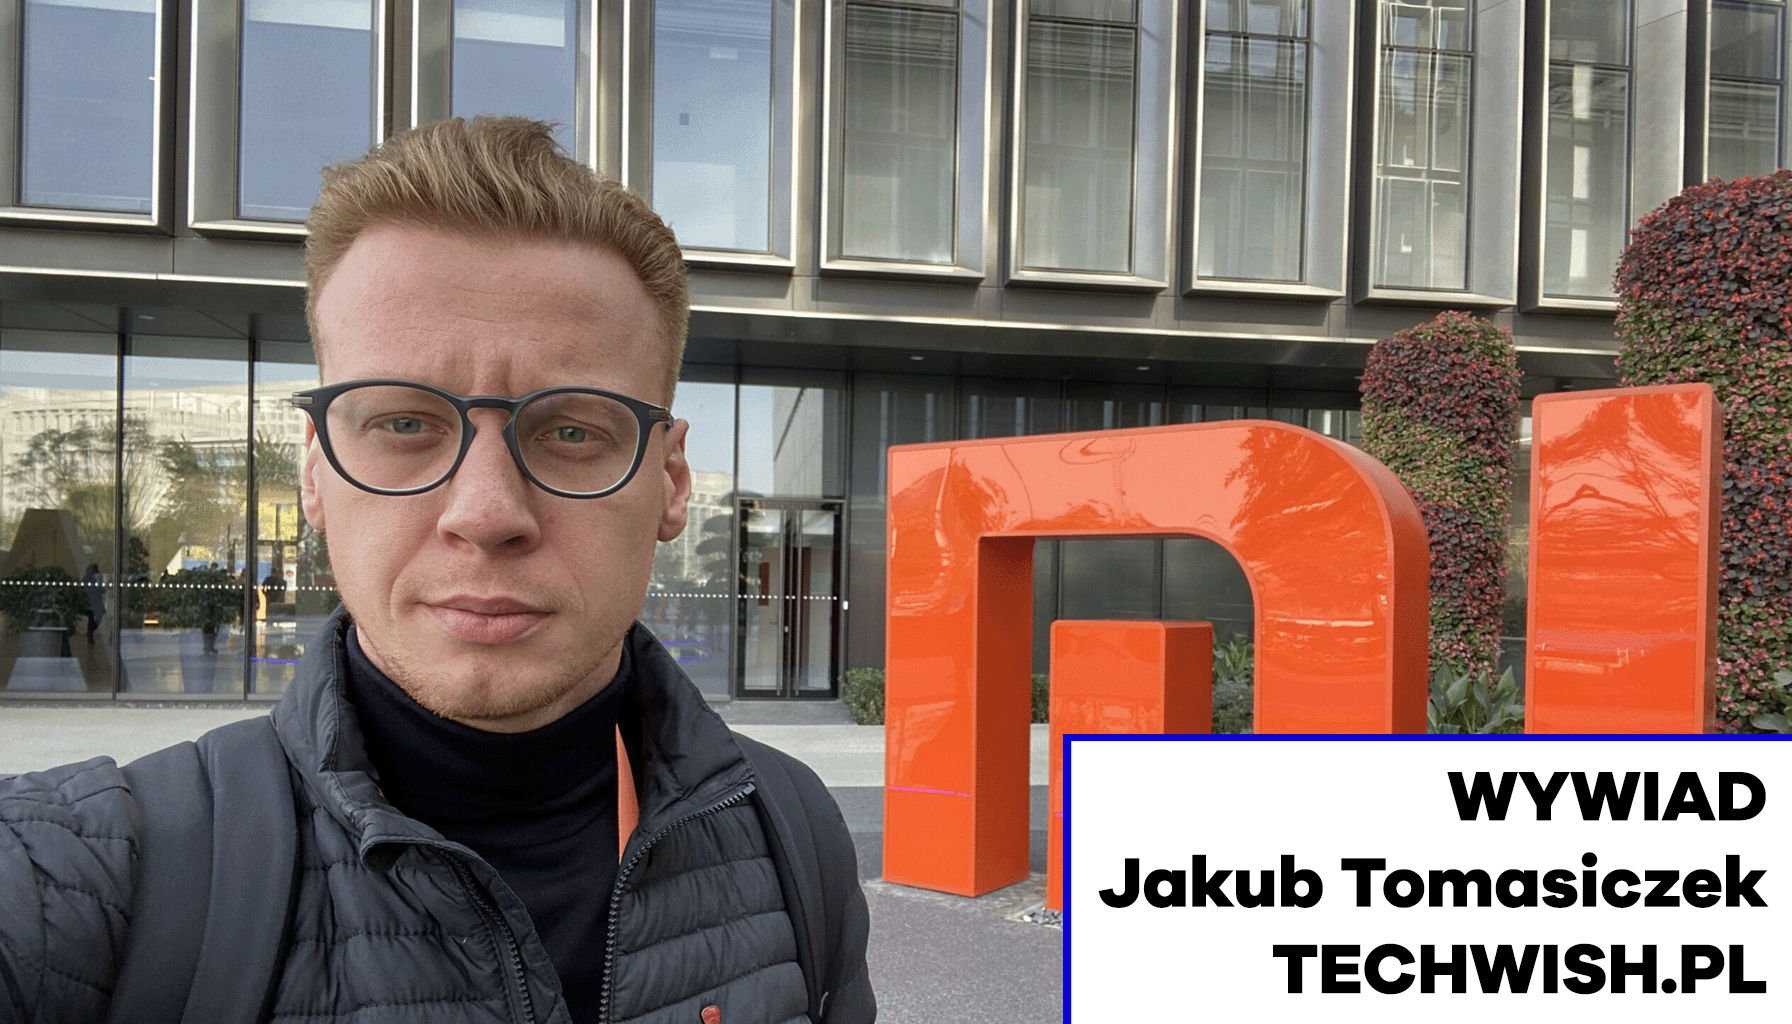 Wywiad z Jakubem Tomasiczkiem – założycielem Techwish.pl Technologia MEDIARUN.COM JAKUB TOMASICZEK TECHWISH WYWIAD V2